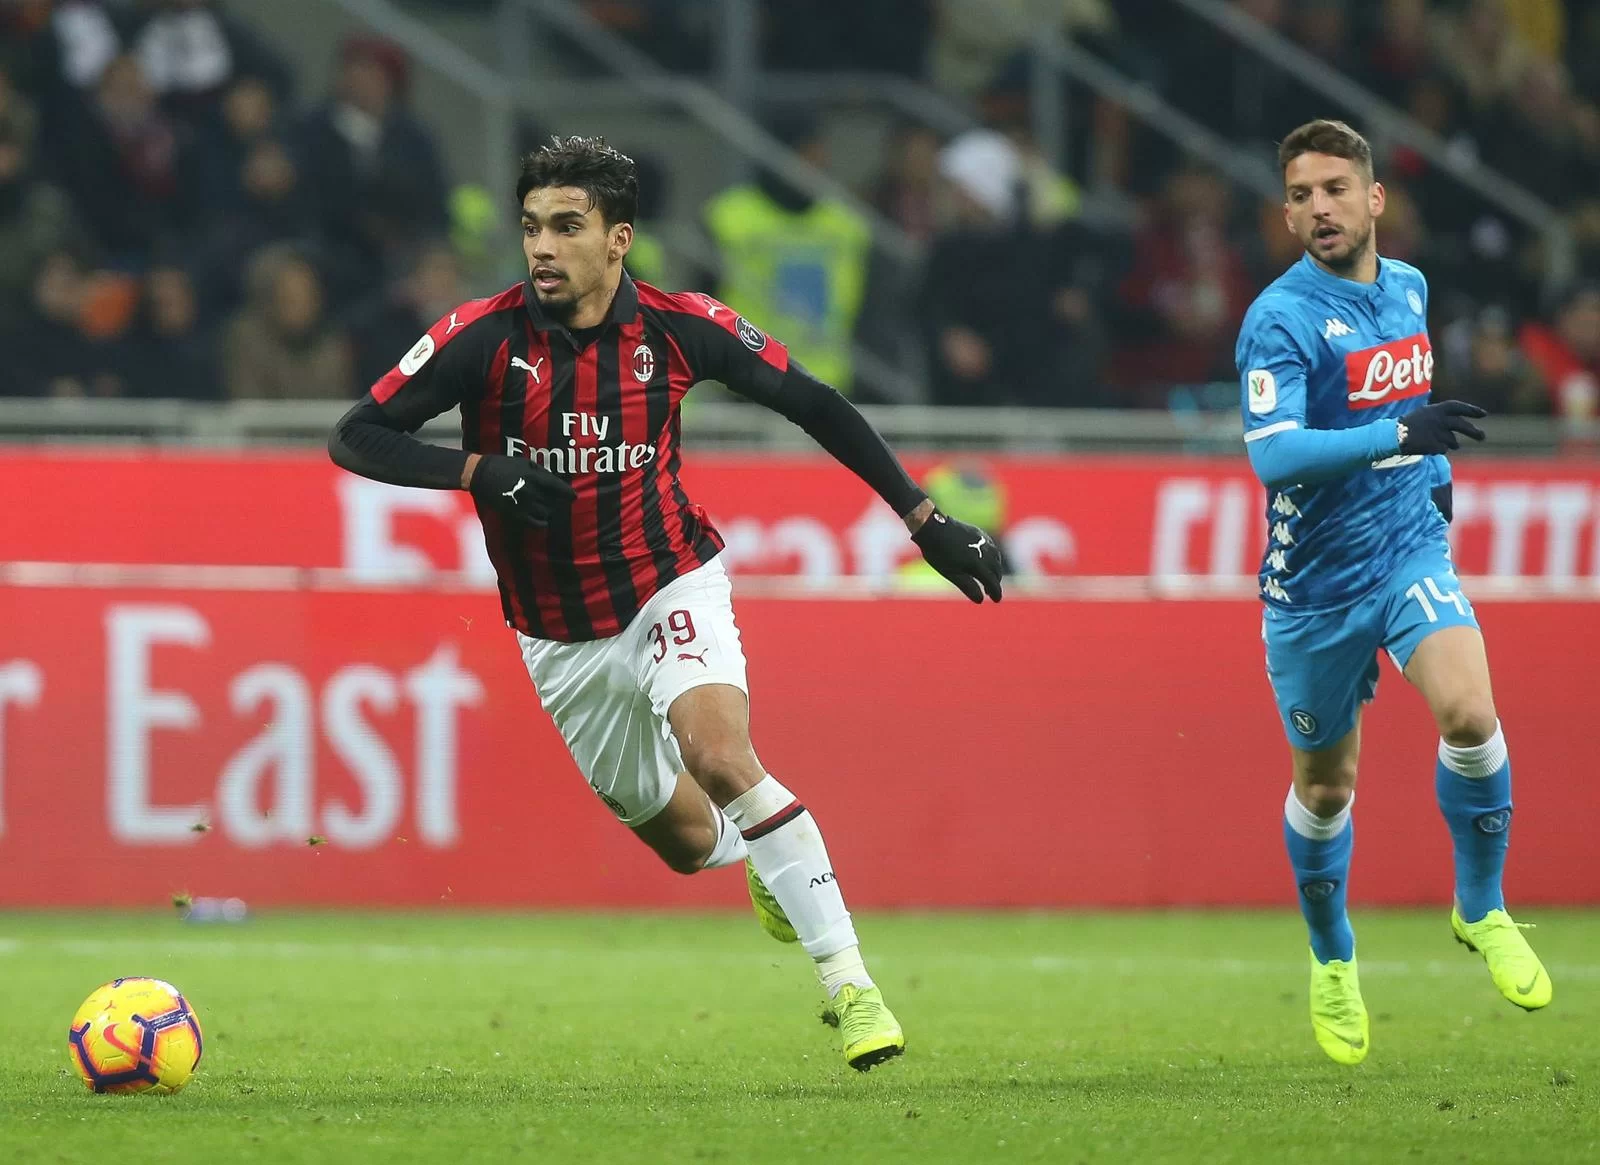 Calciomercato Milan – Leonardo pensa a Lucas Paquetá. Il punto